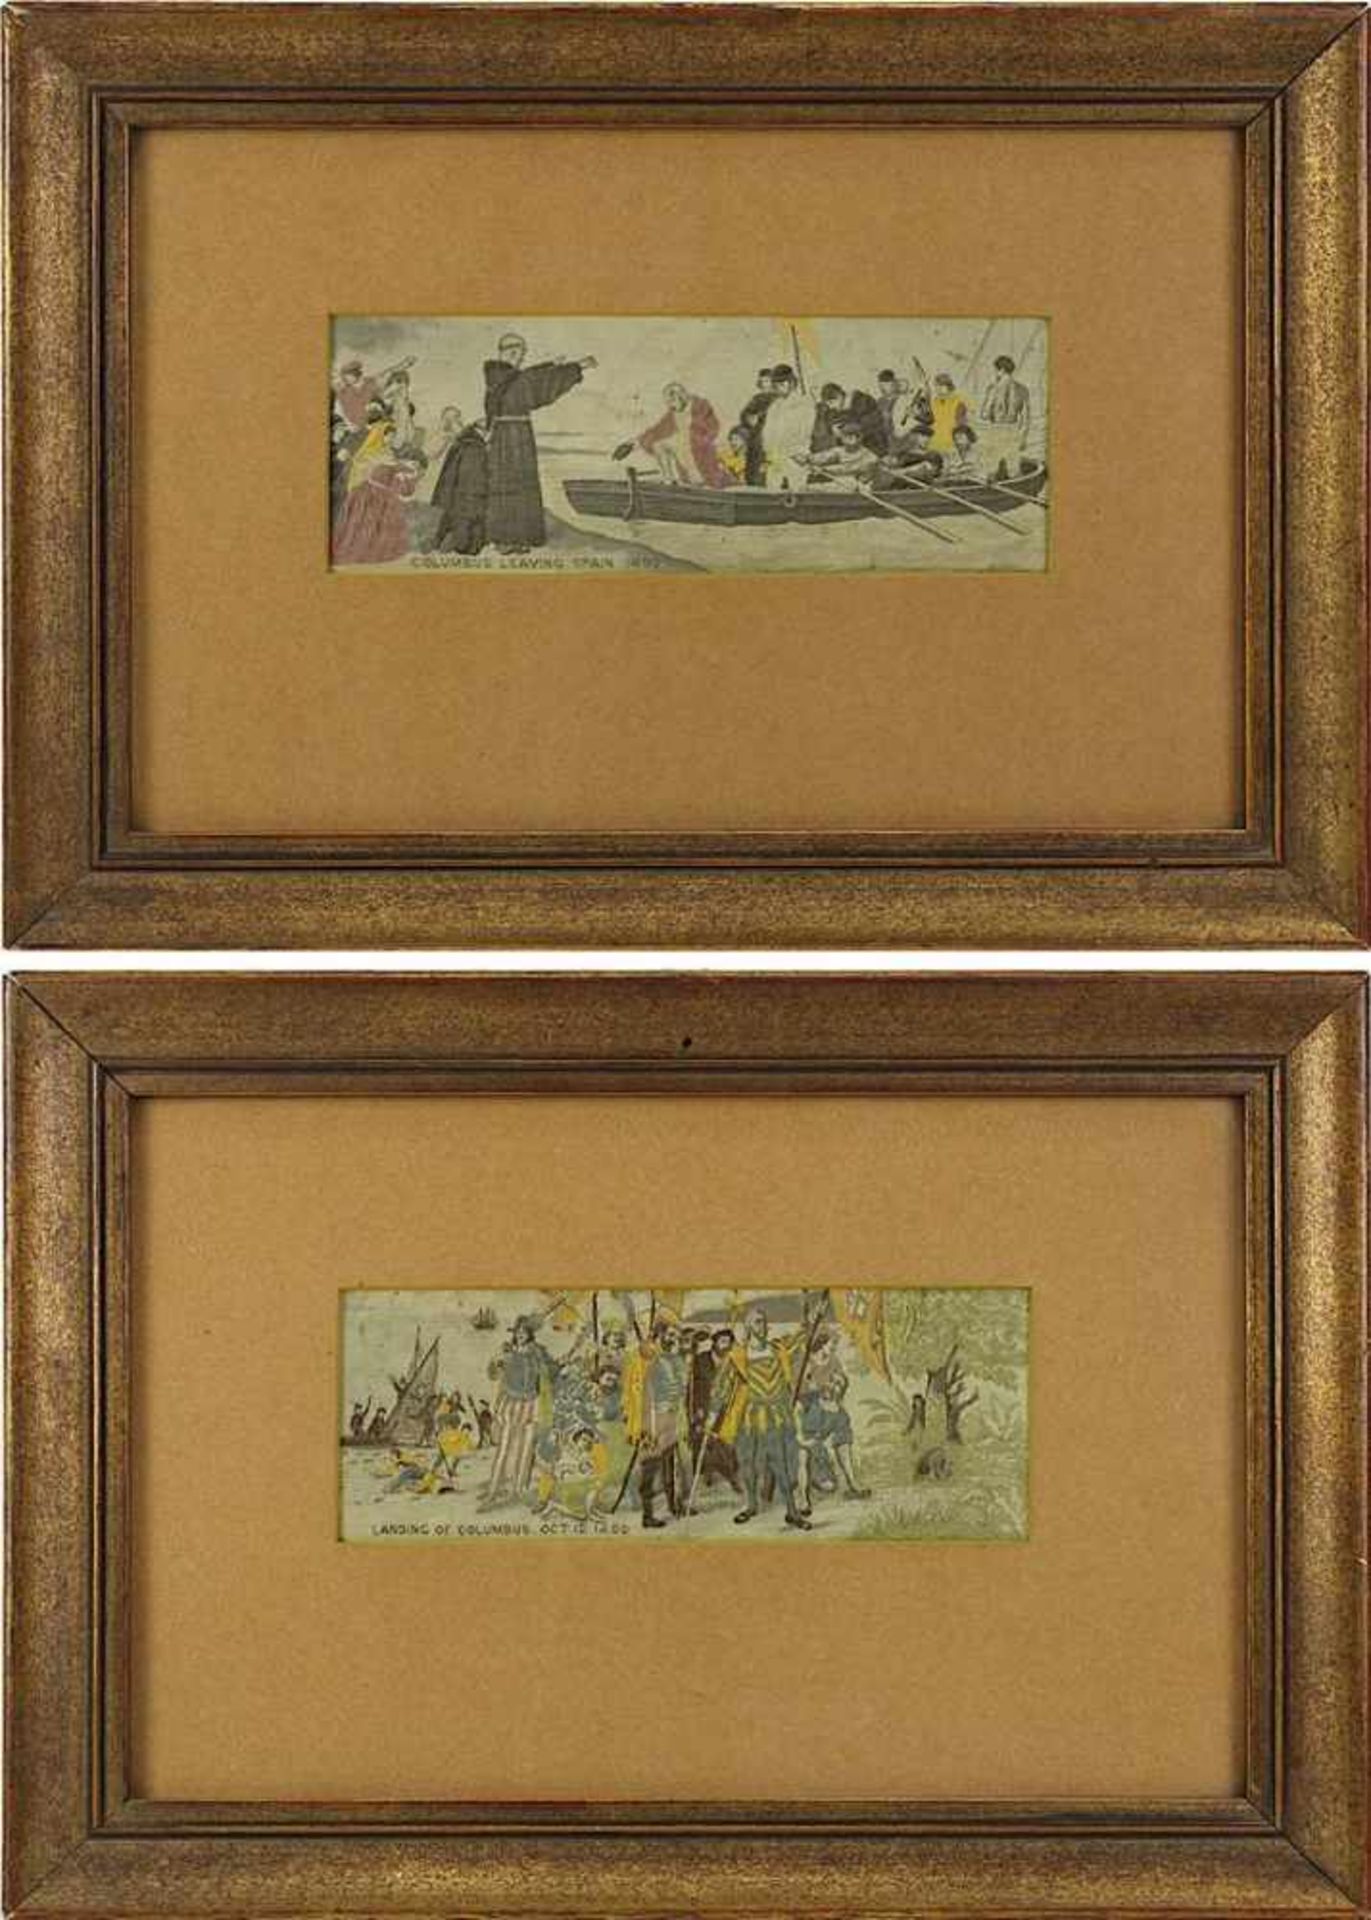 2 Seidenbilder zu Columbus' Enteckung Amerikas, angefertigt zur Weltausstellung Chicago 1893,